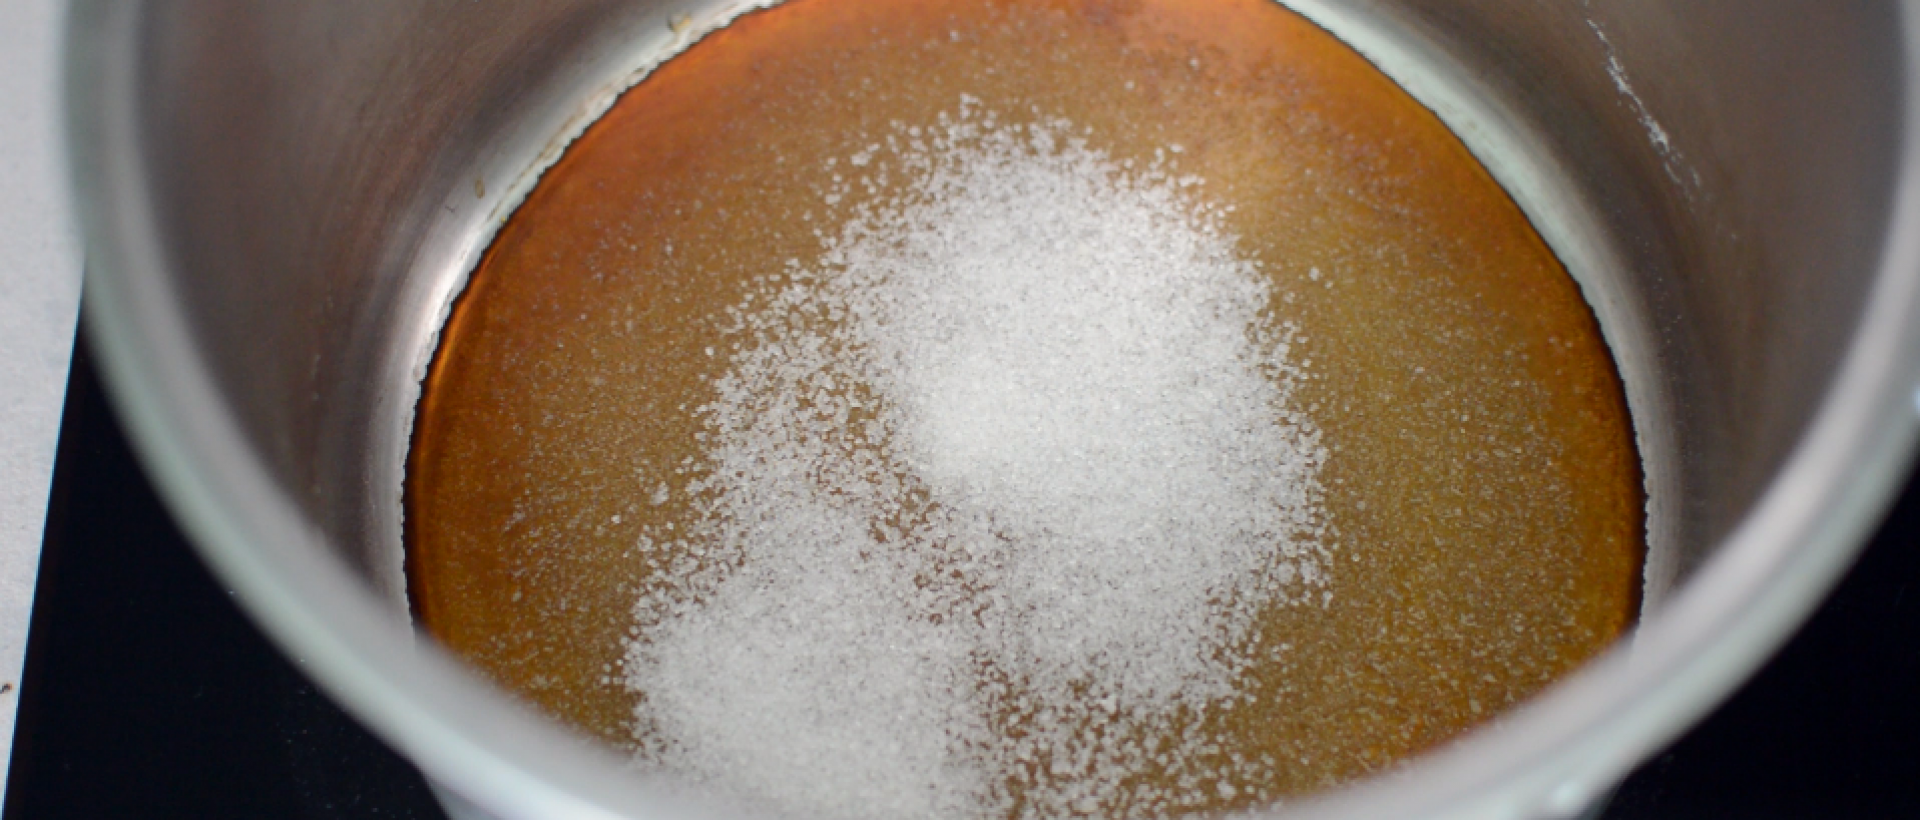 Így kell cukrot karamellizálni